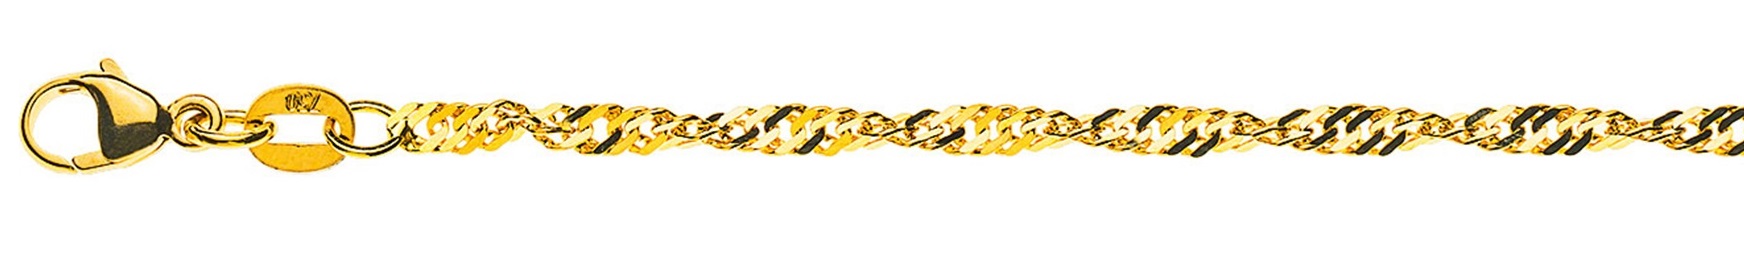 AURONOS Prestige Necklace Yellow Gold 18K Singapore Chain 60cm 2.4mm